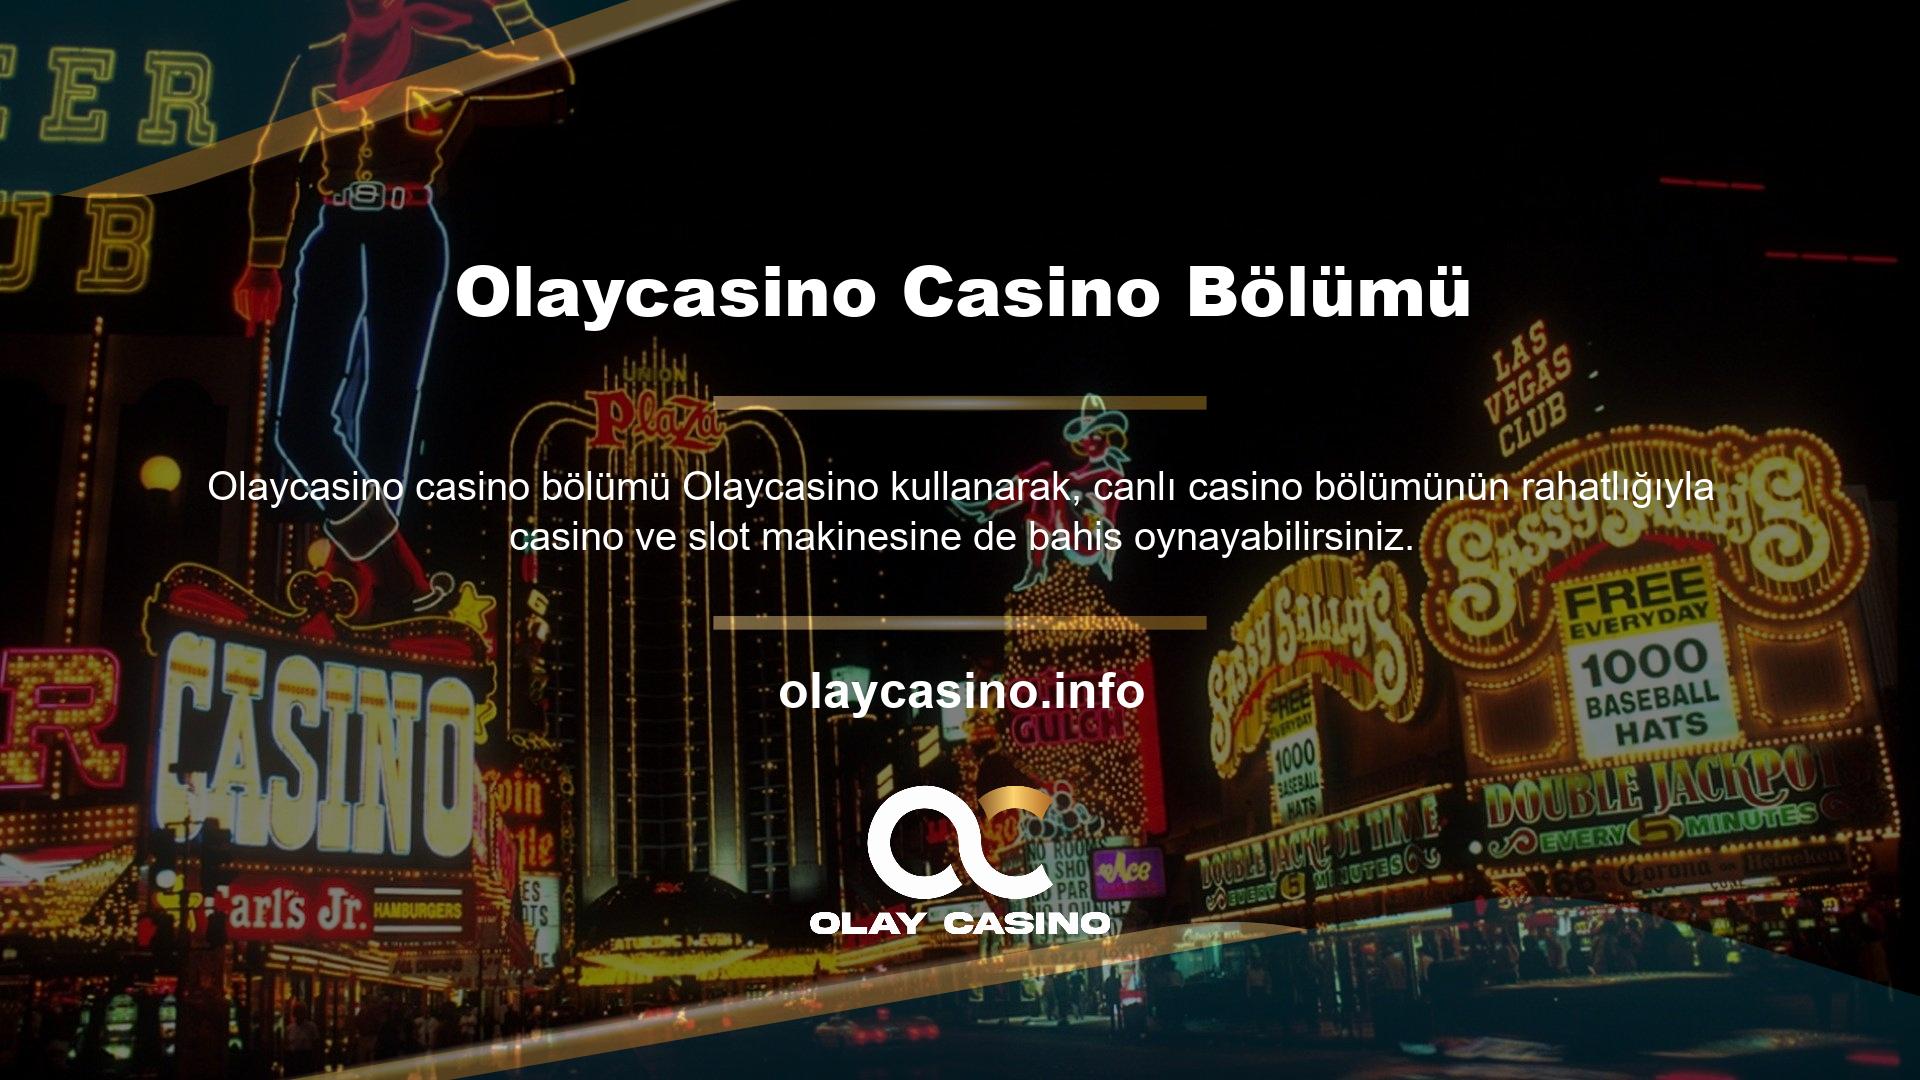 Bahis dünyasının önde gelen ve en popüler bahis sitelerinden biri olan Olaycasino, aynı zamanda kazanmanız için bir bonus faktörü de sunuyor